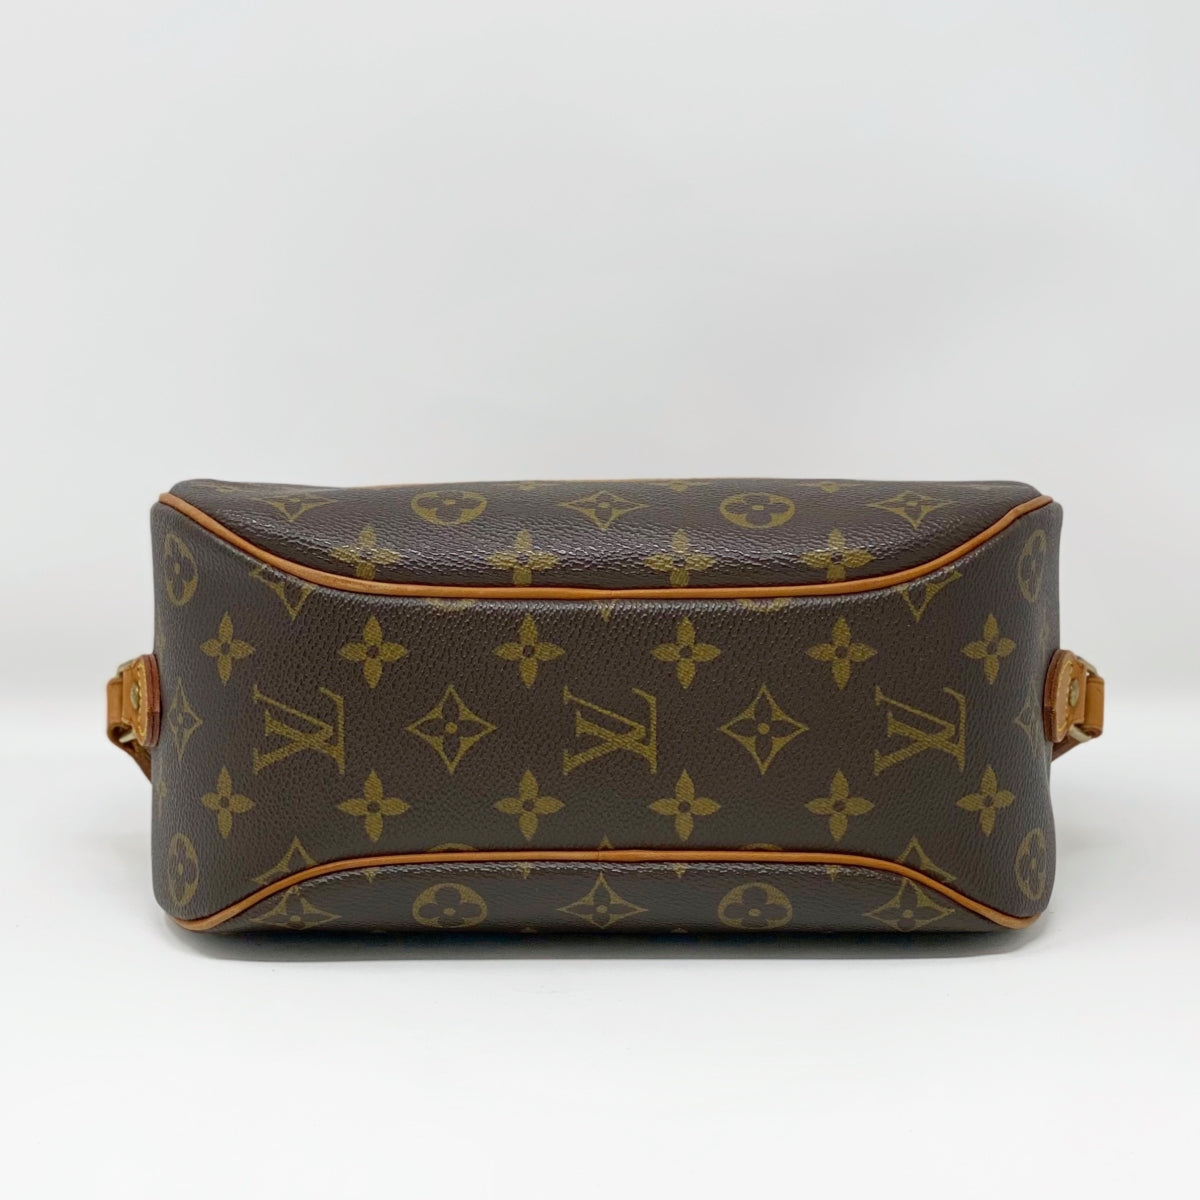 Louis Vuitton Monogram Blois Shoulder Bag